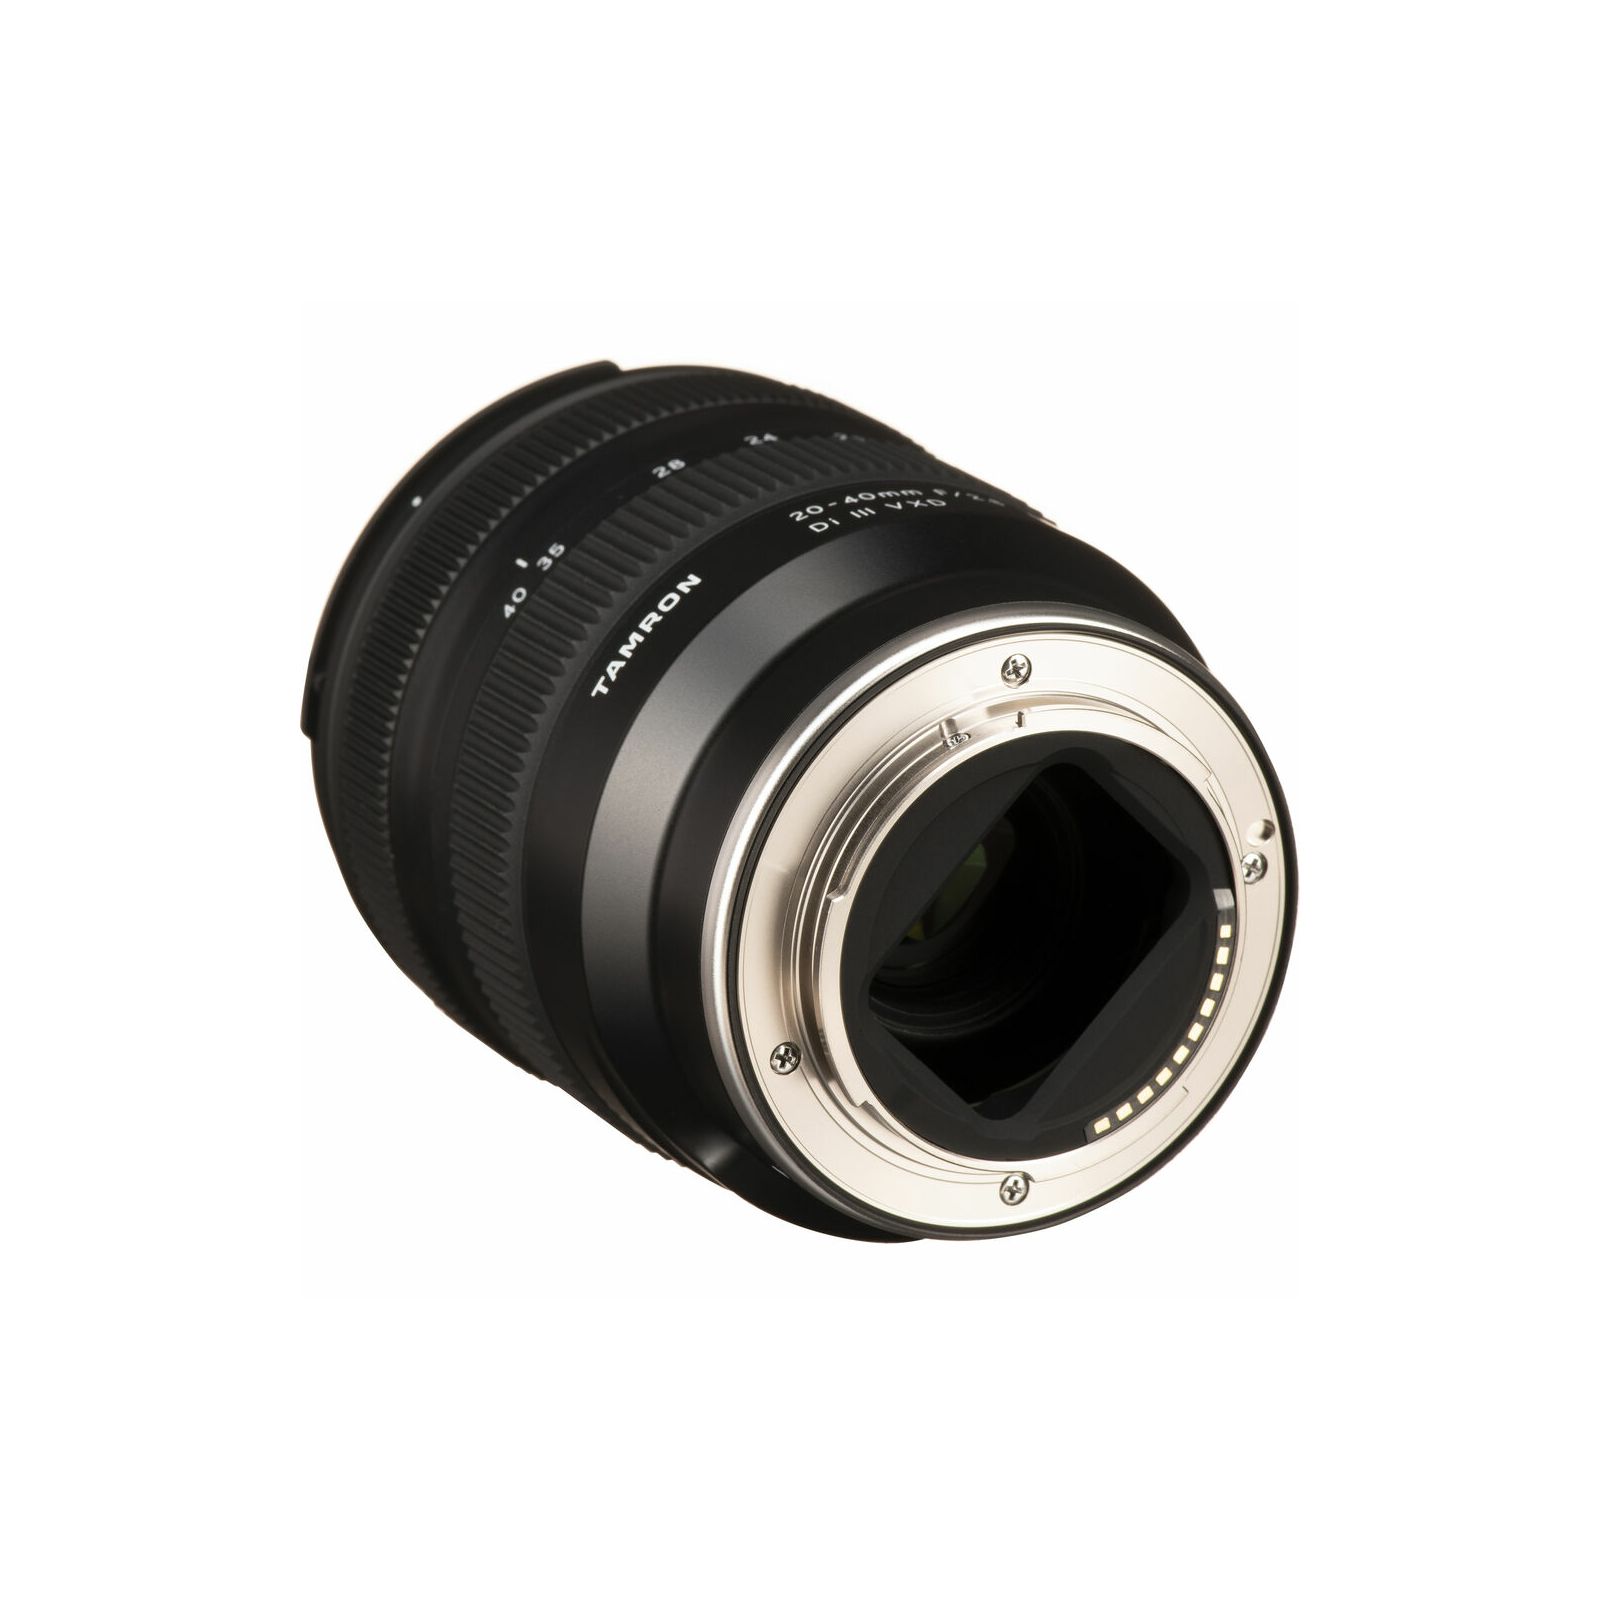 Tamron AF 20-40mm f/2.8 Di III VXD objektiv za Sony FE-Mount